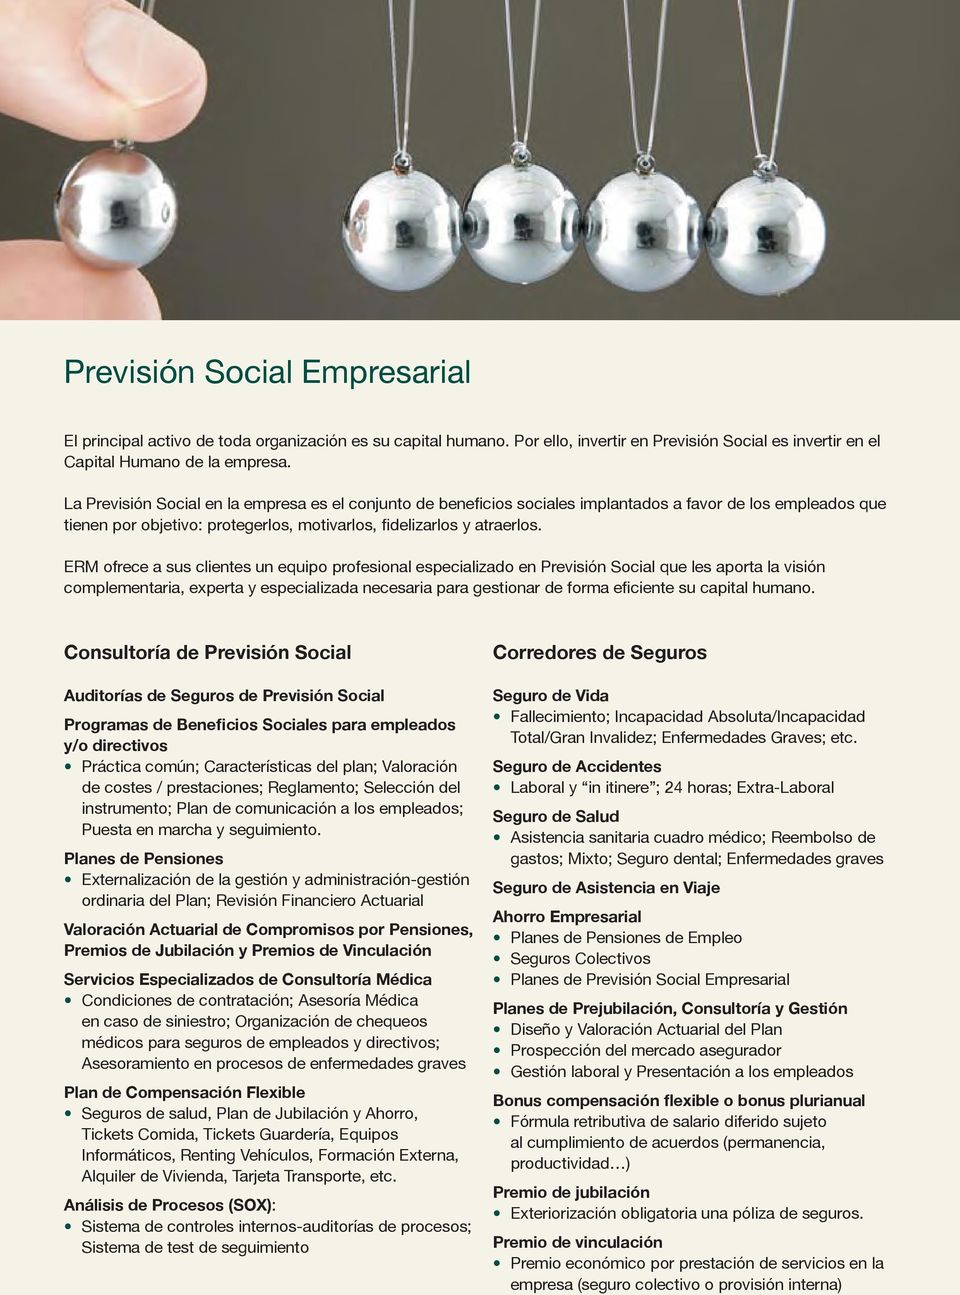 ERM ofrece a sus clientes un equipo profesional especializado en Previsión Social que les aporta la visión complementaria, experta y especializada necesaria para gestionar de forma eficiente su